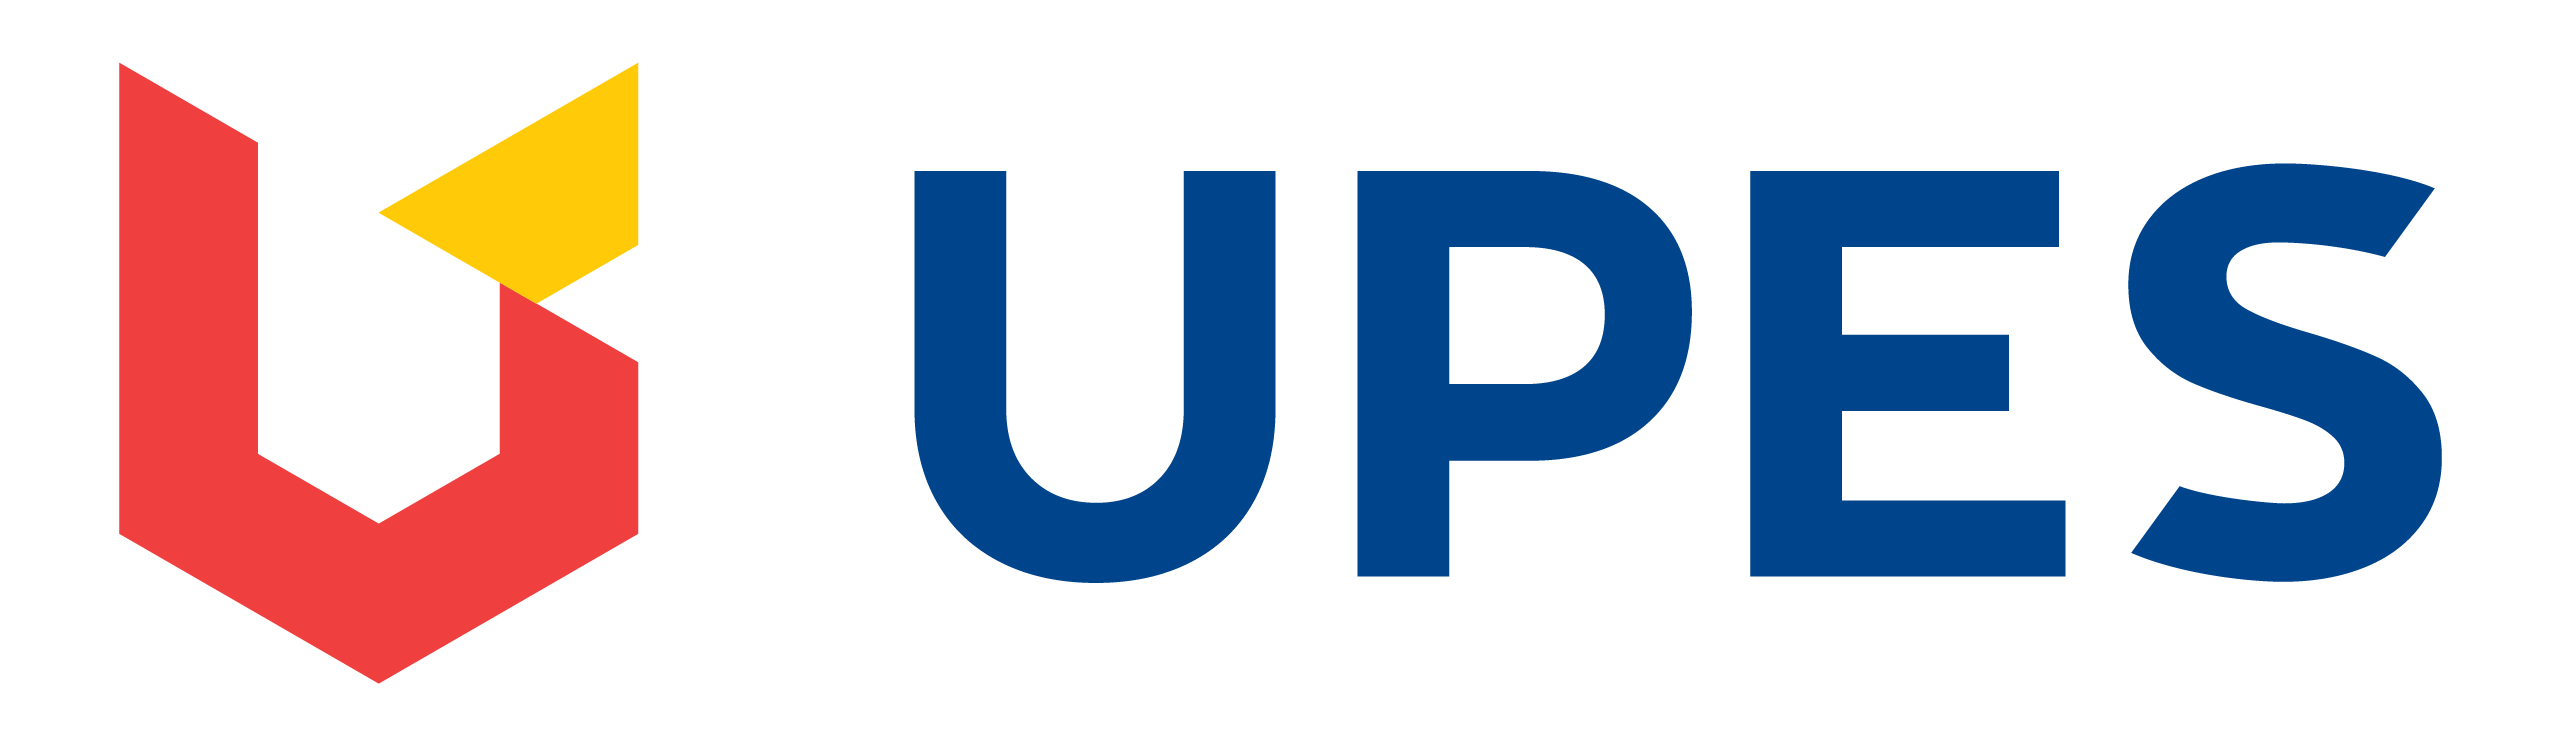 Study energy. Upes. УПА logo. Upe 5. Петролиум Шнос логотип.